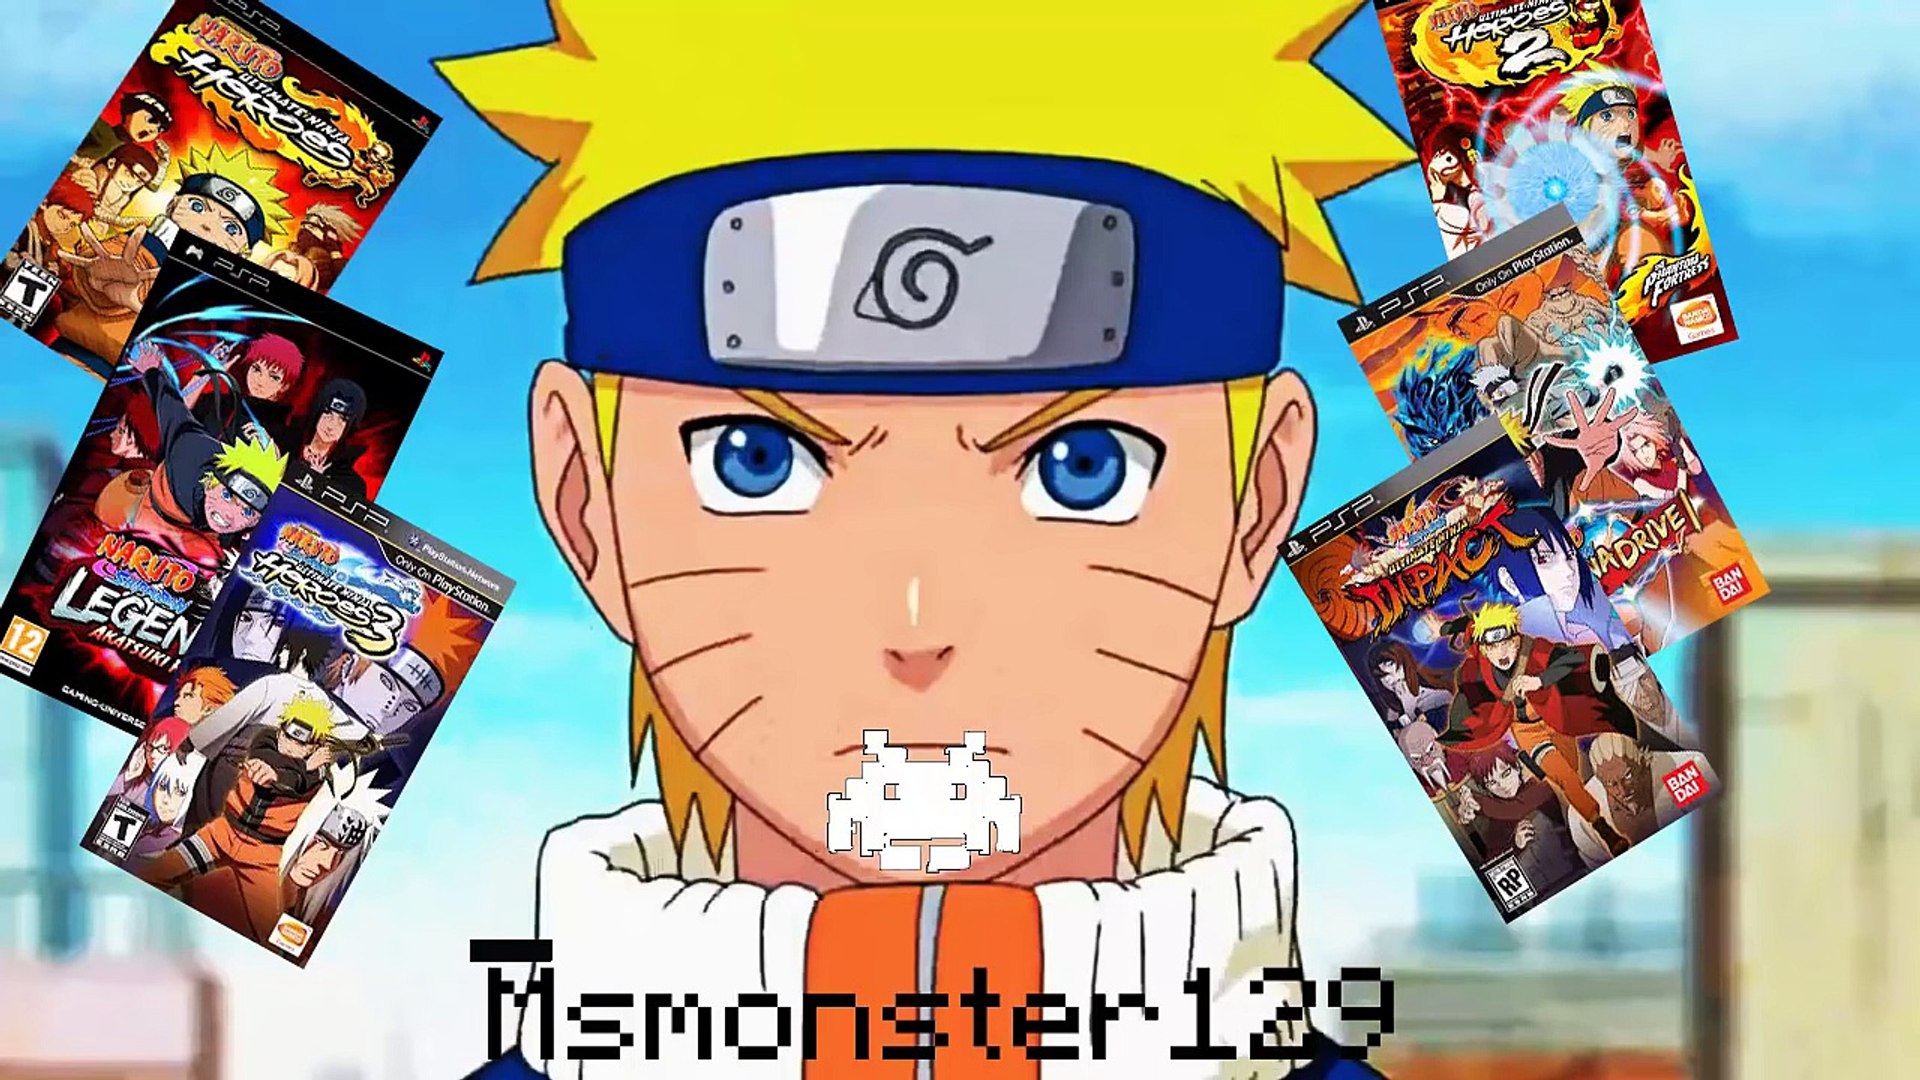 Descargar Todos los juegos de Naruto para Psp - Vídeo Dailymotion